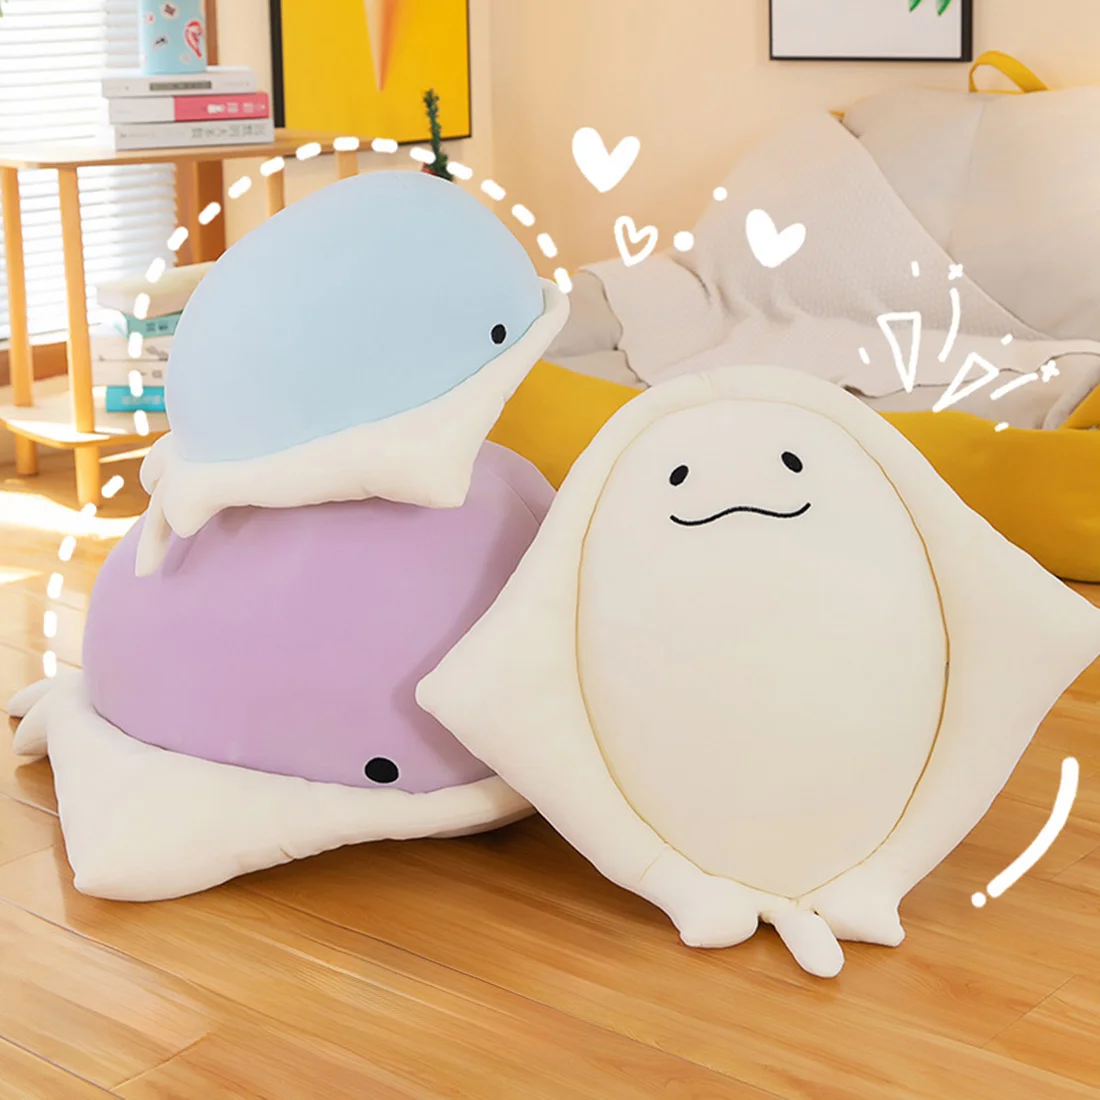 

Kawaii Manta Ray плюшевые игрушки, японская кукла-луч, диванная подушка, мягкая игрушка-рыба, подушка для дивана, подушки для сна, подарок для девочек и детей